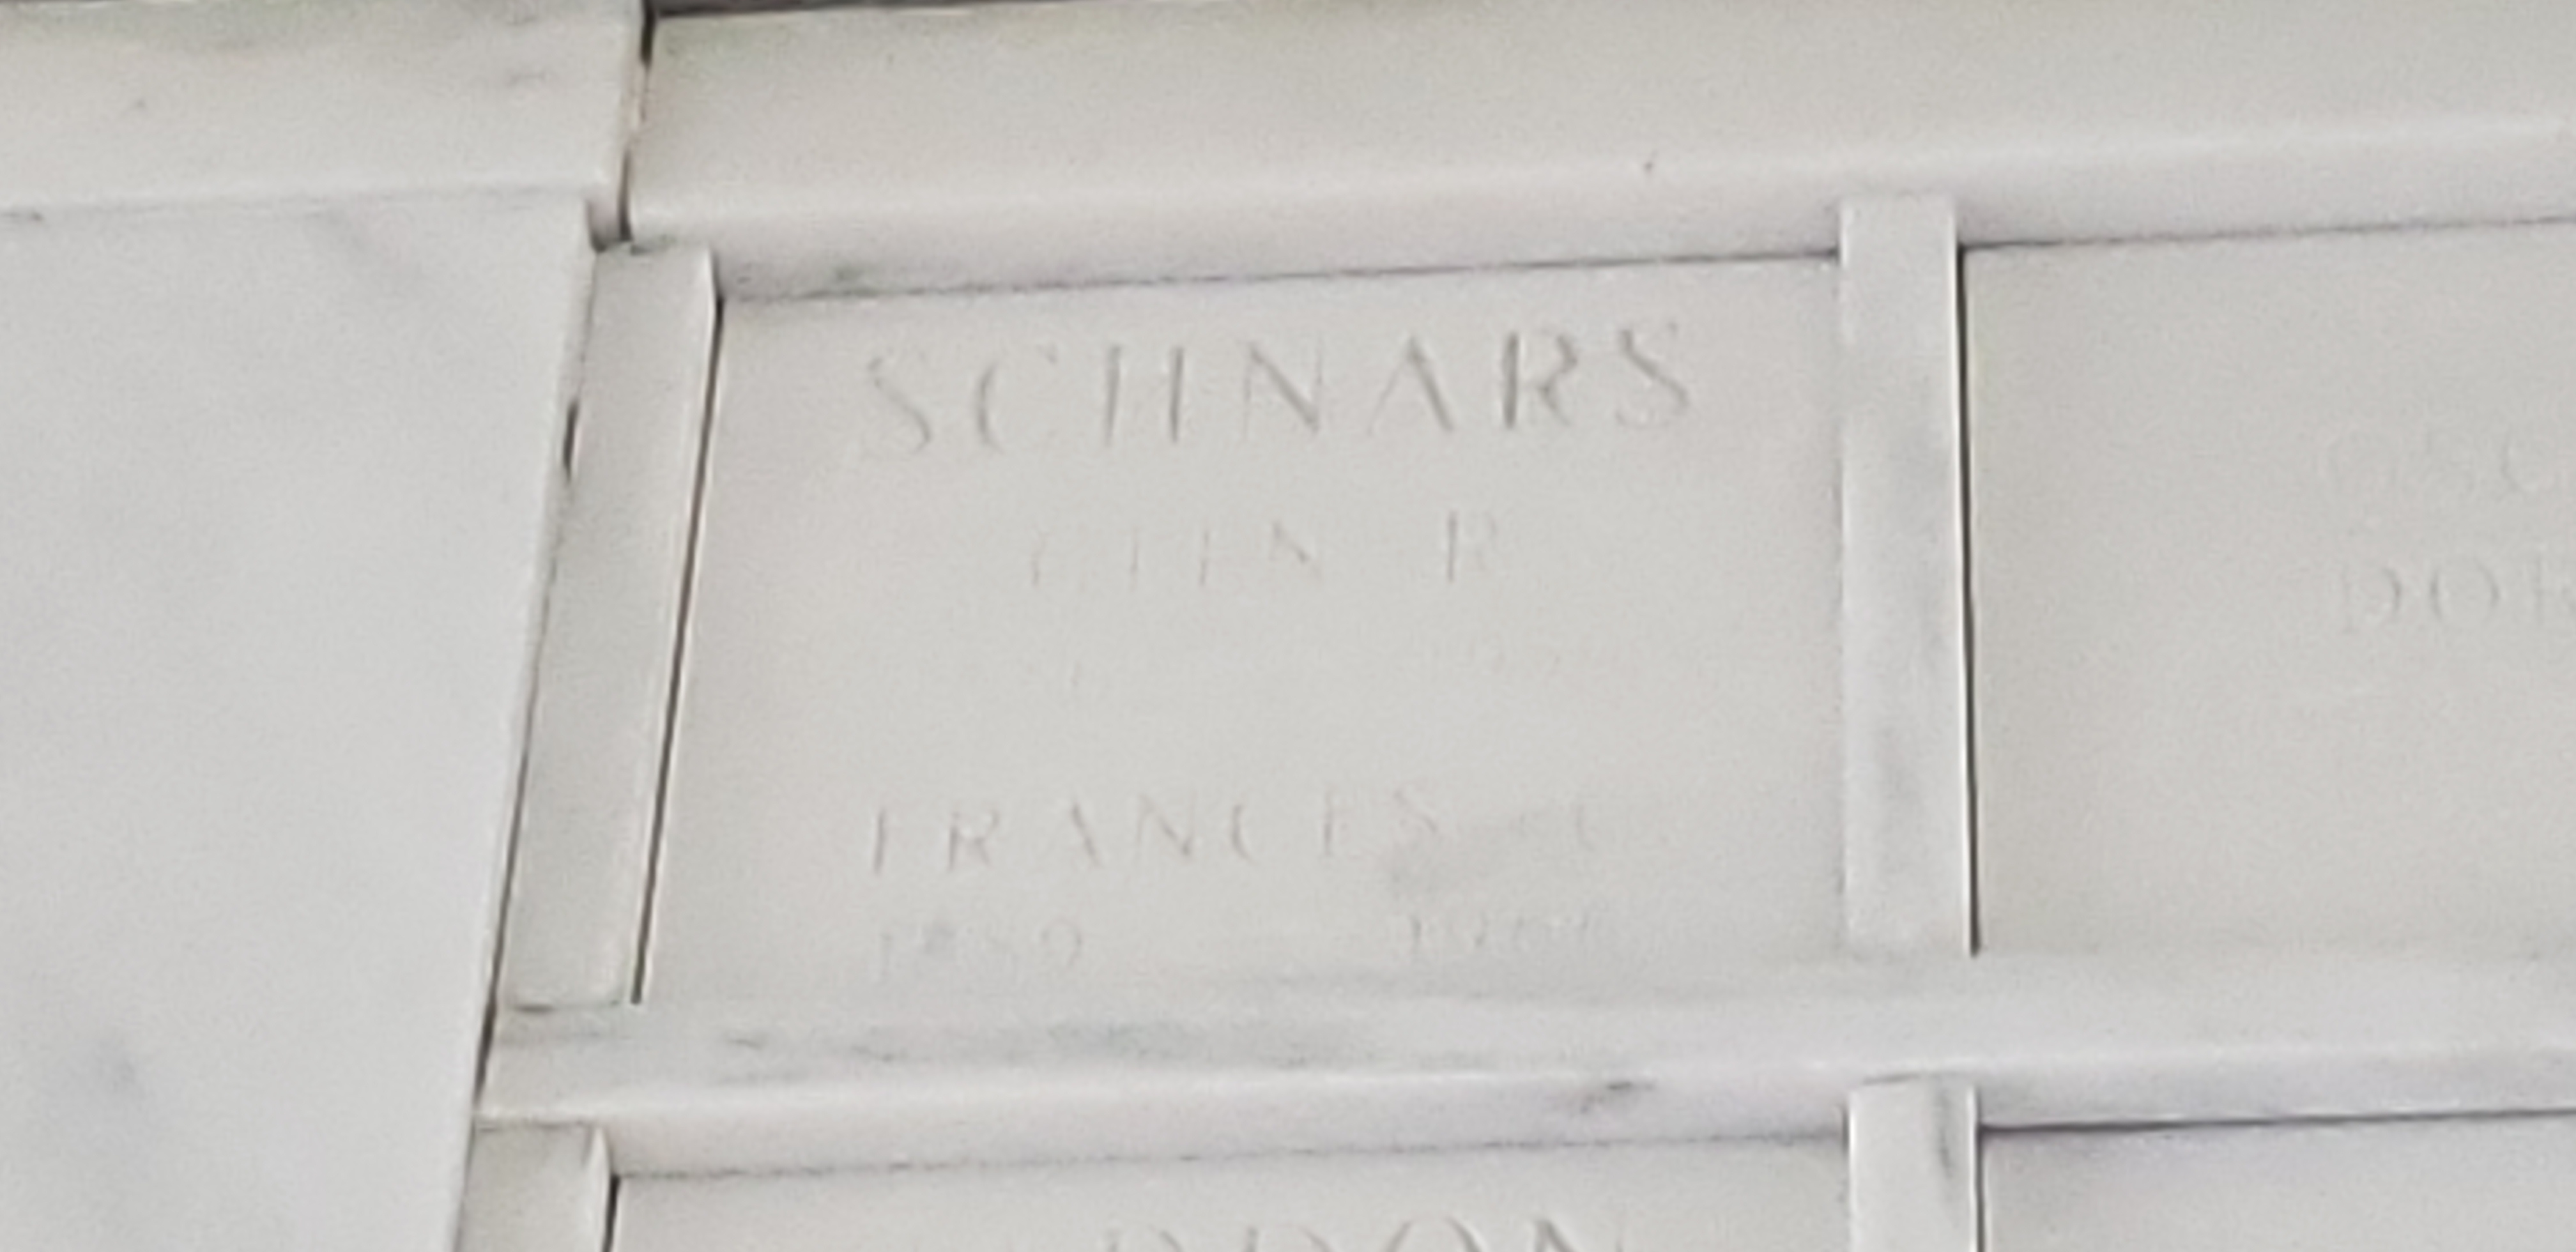 Frances C Schnars